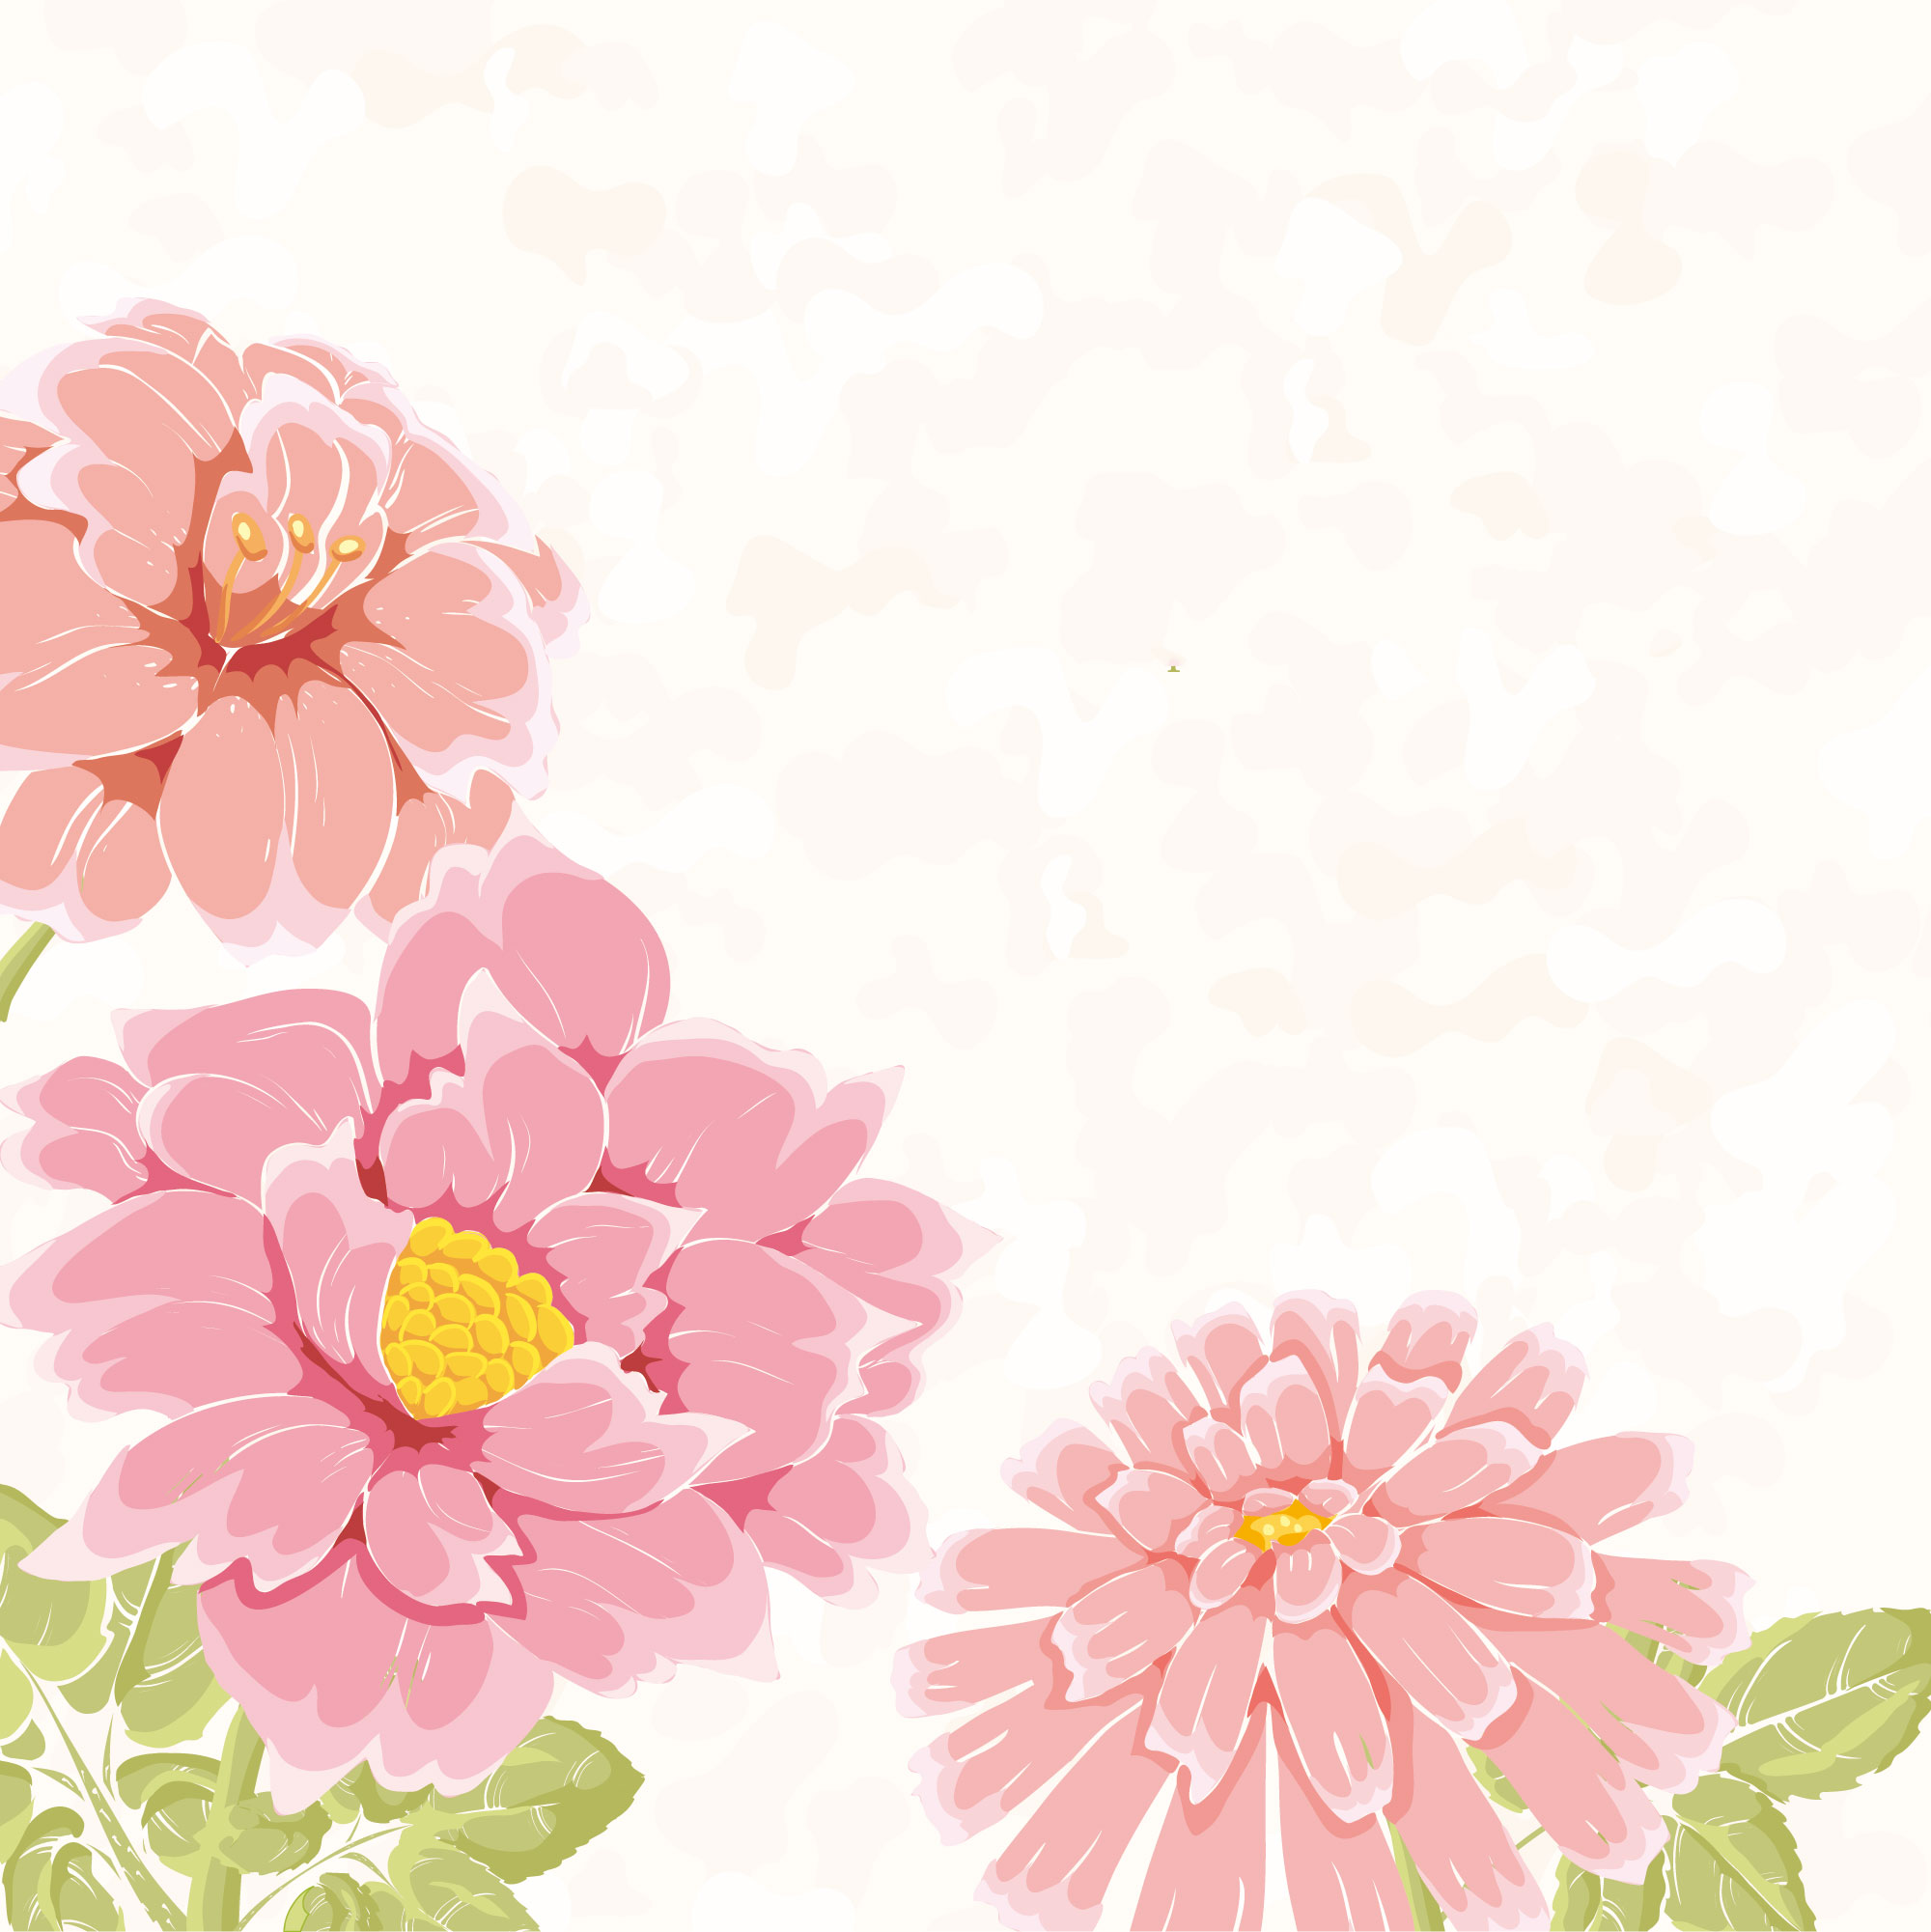 牡丹 ぼたん のイラスト 画像no 9 壁紙 牡丹の花 無料のフリー